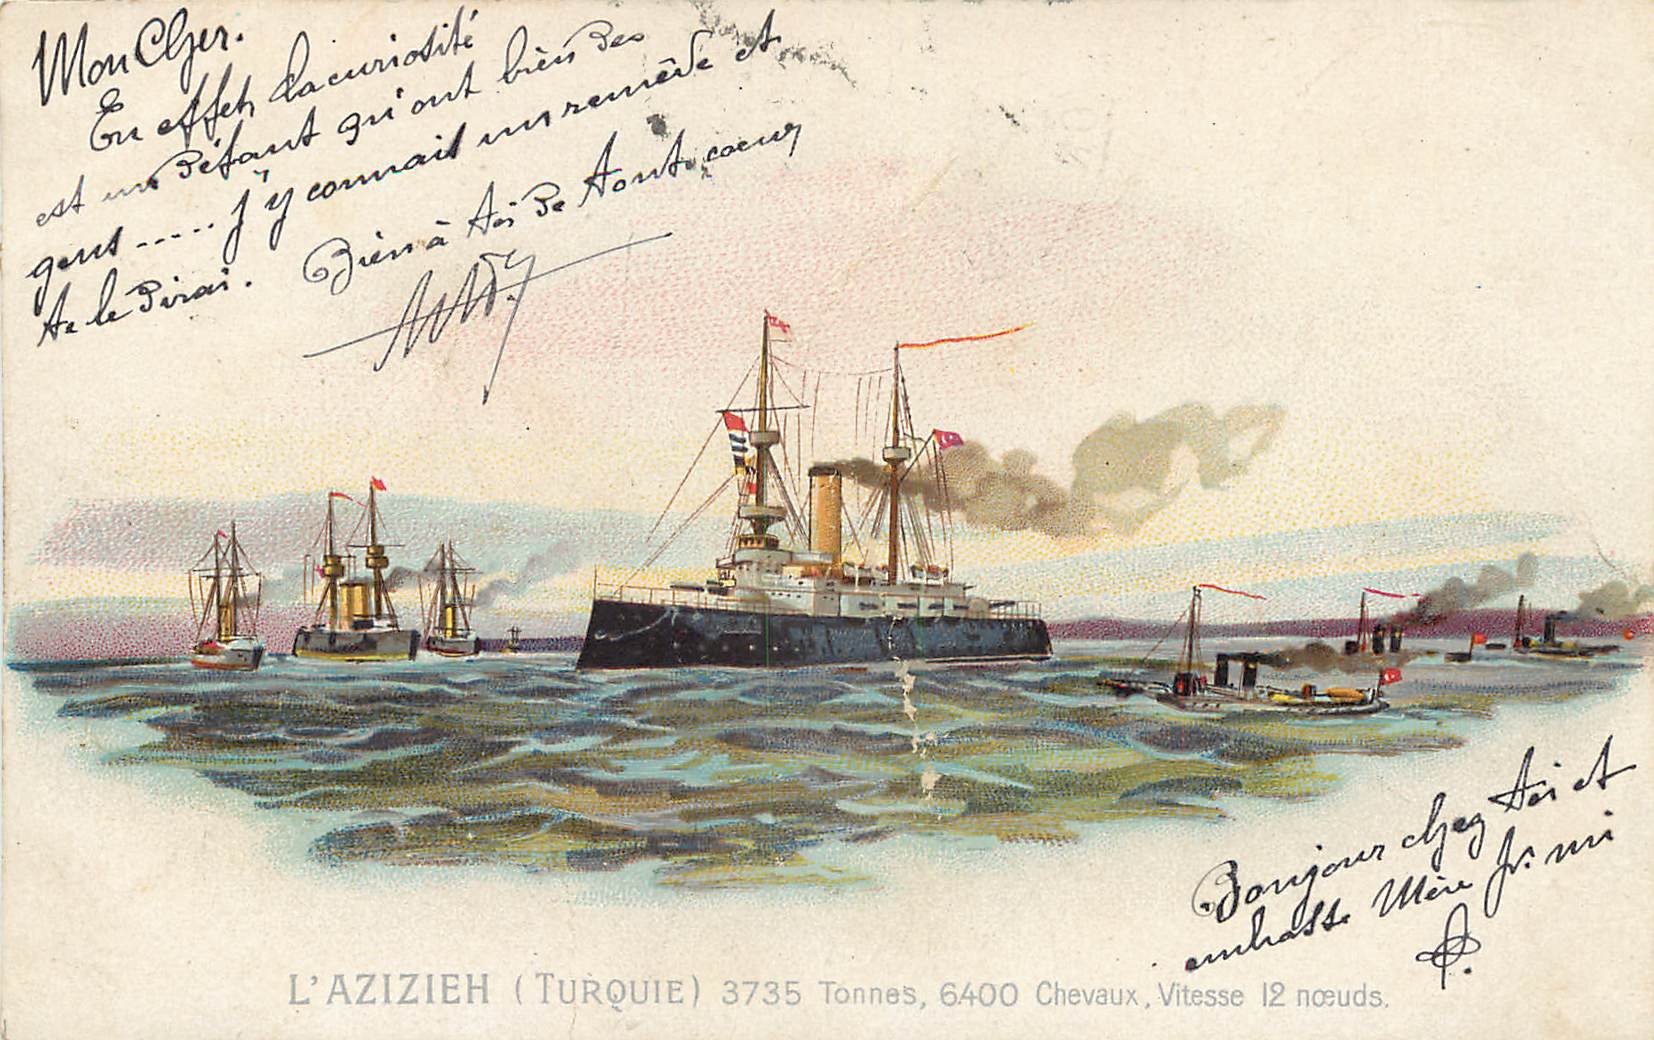 Transports Navire " L'AZIZIEH " Turquie. Télégraphie militaire Verdun 1901